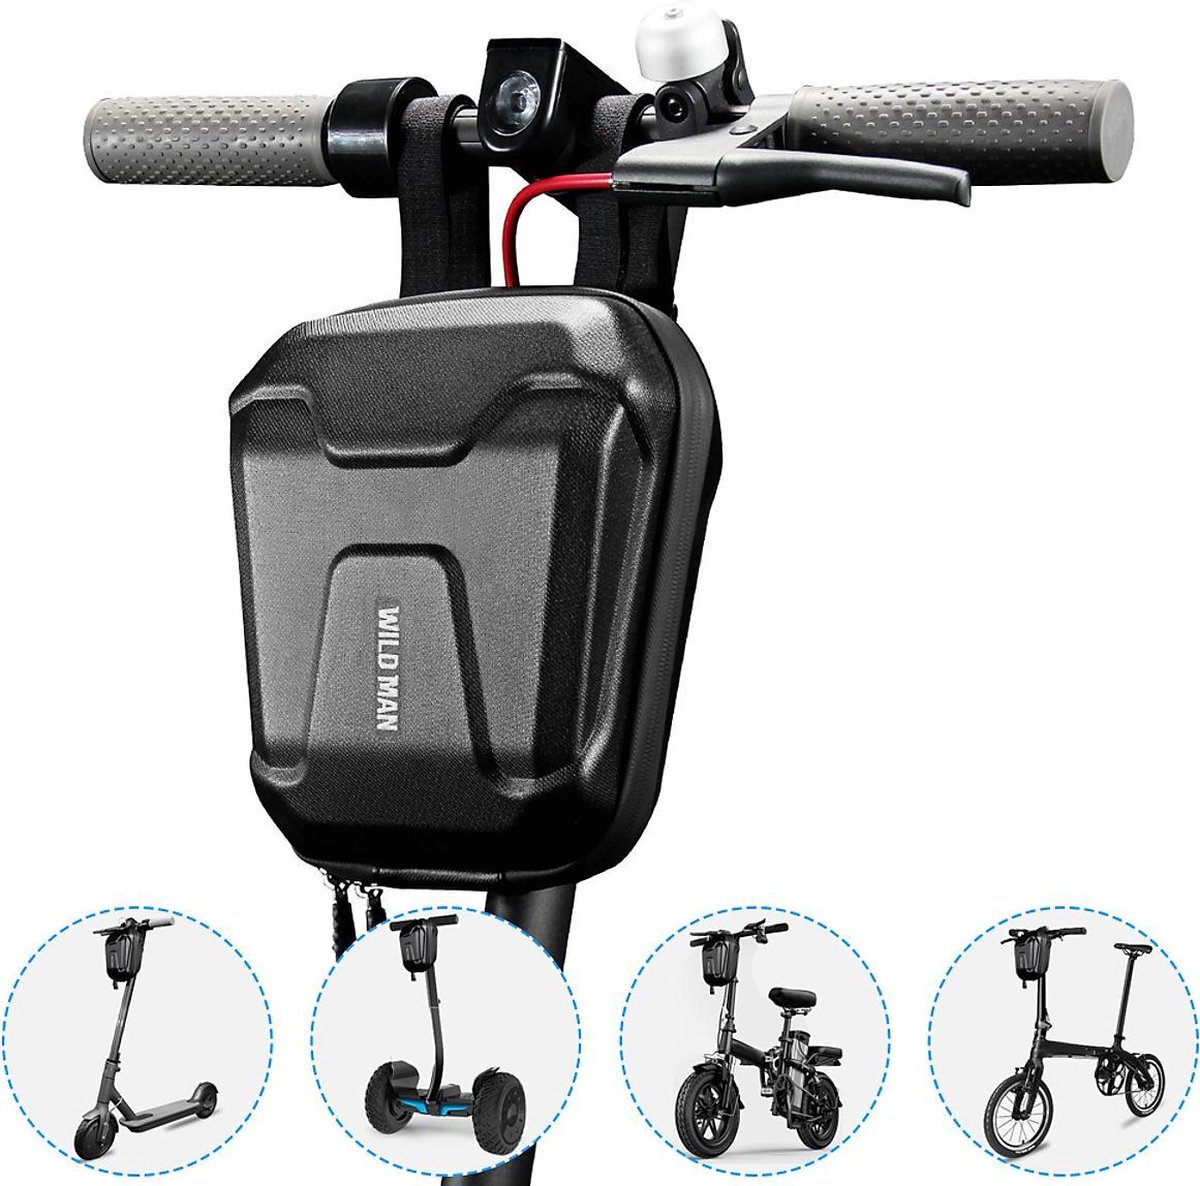 2.5L Tas elektrische step, extra sterke stuurtas, elektrische scooter, fiets, vouwfiets, mountainbike, Segway etc, waterdicht